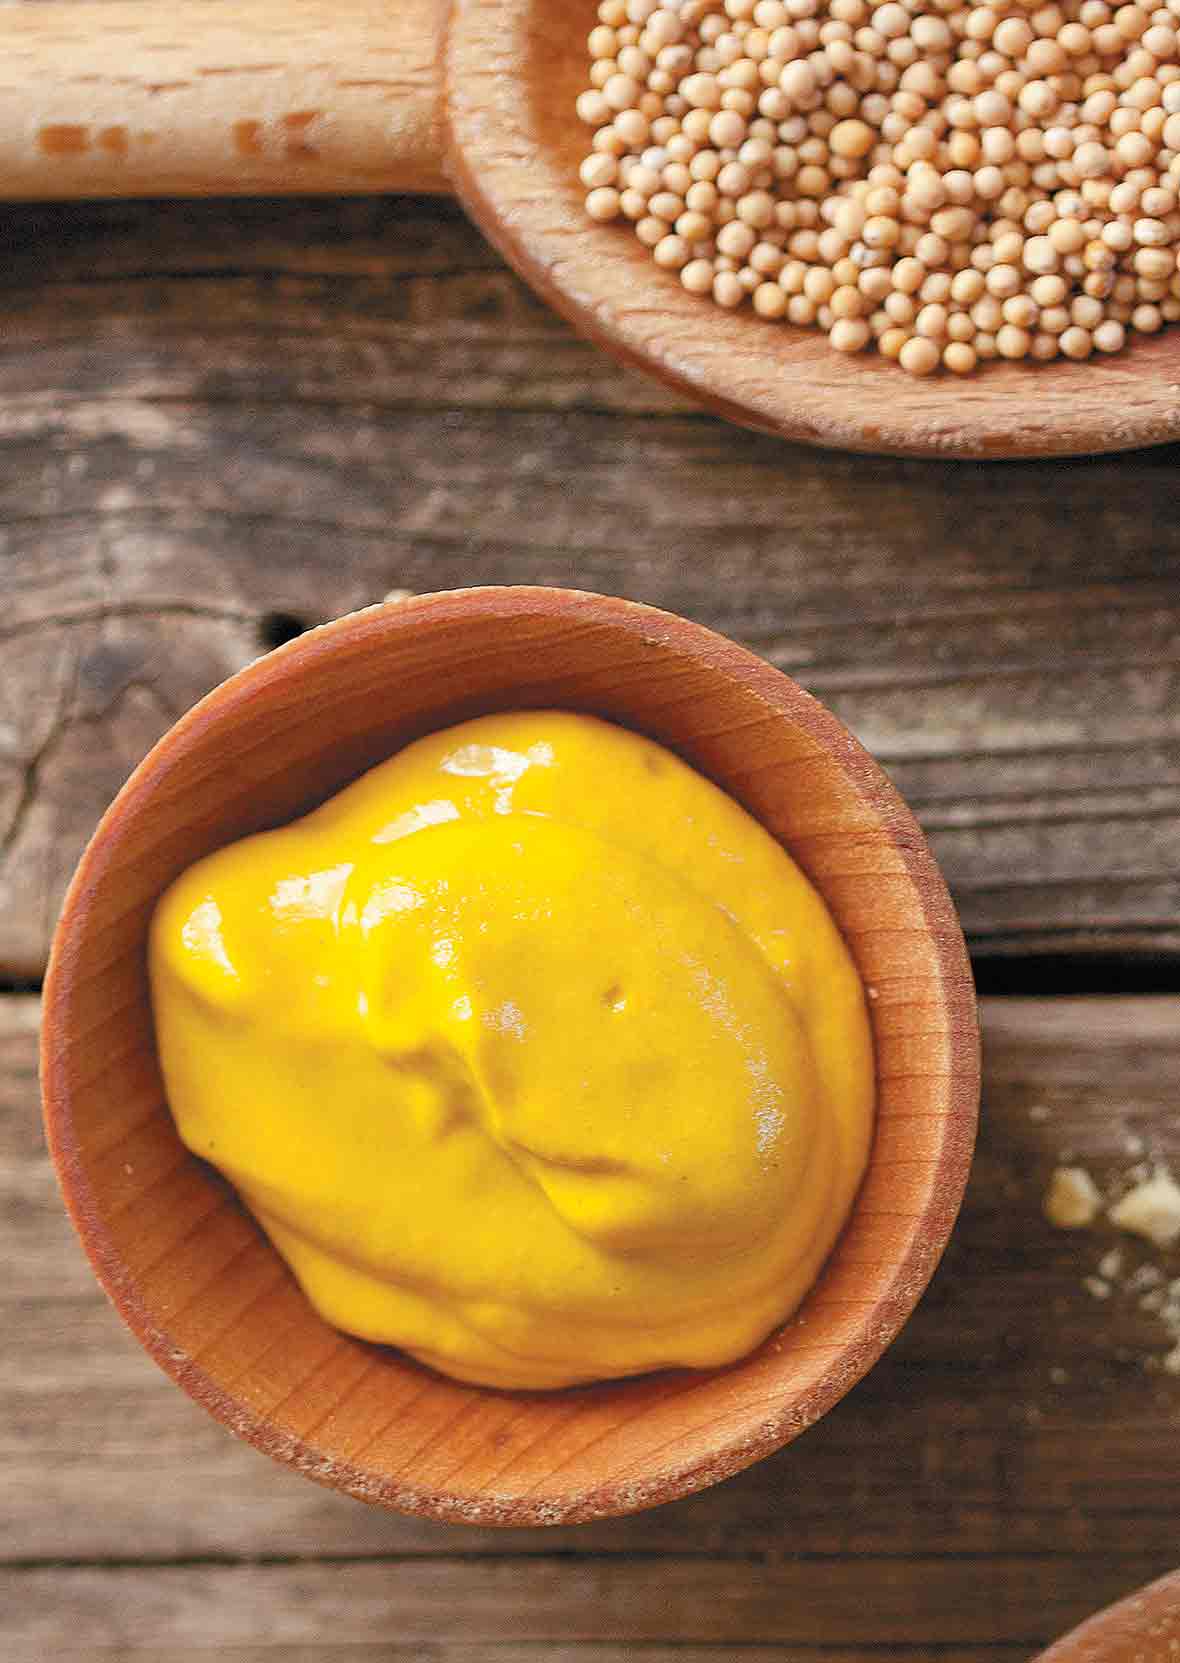 Hạt Mù Tạt Vàng Thương Hiệu Hava Foodies Gói 100g – Yellow Mustard Seed